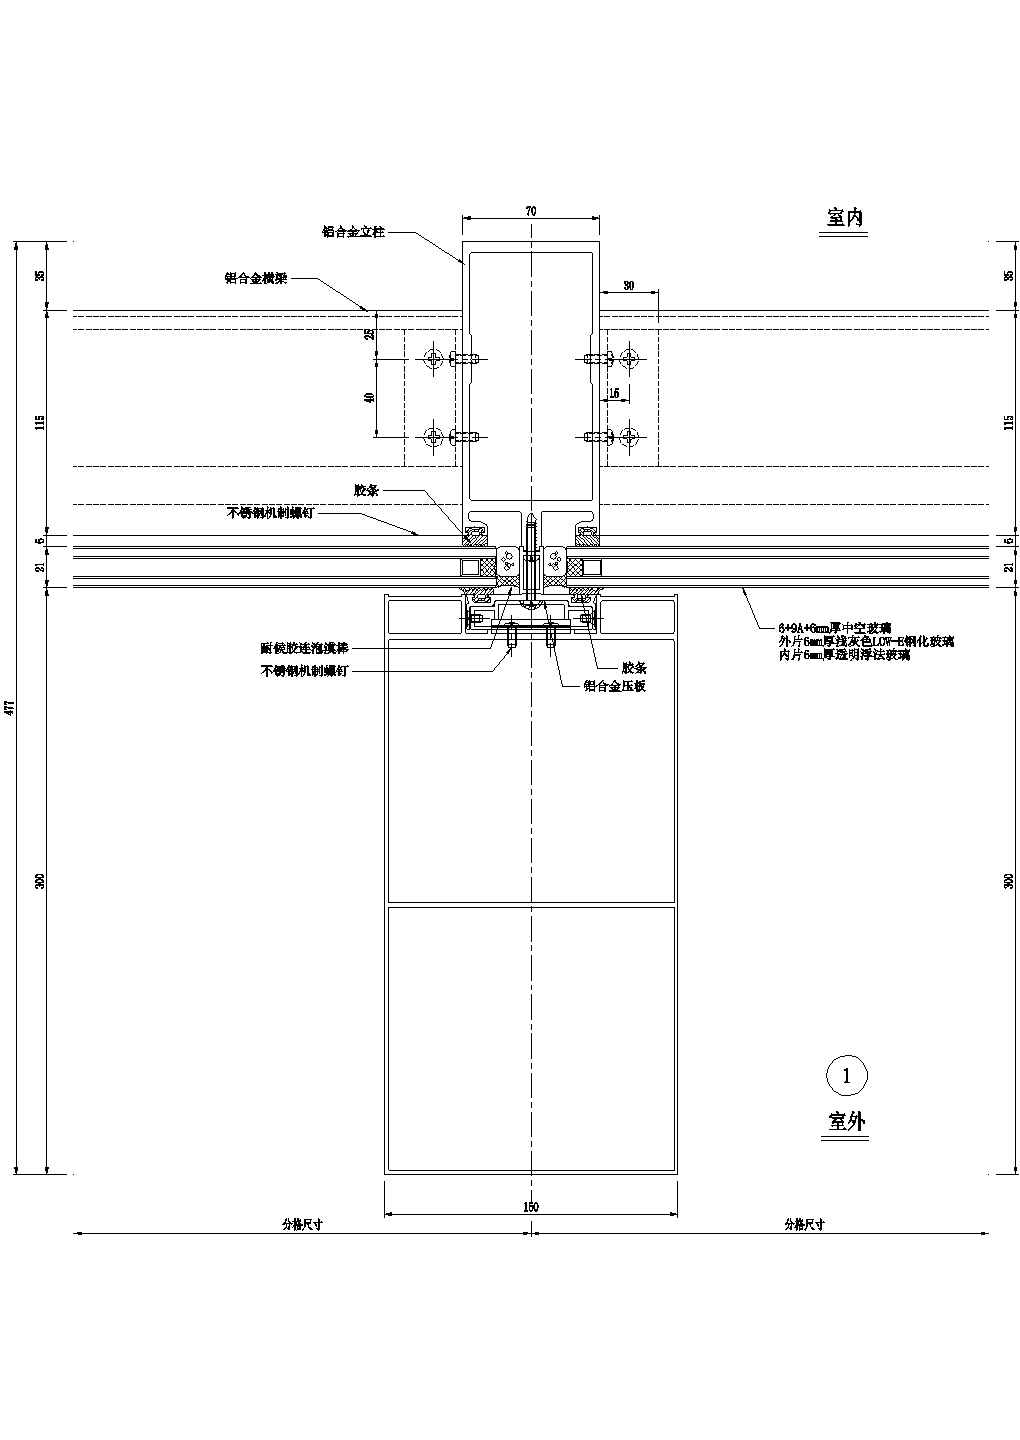 竖明横隐幕墙横剖节点图CAD施工图设计(0001)